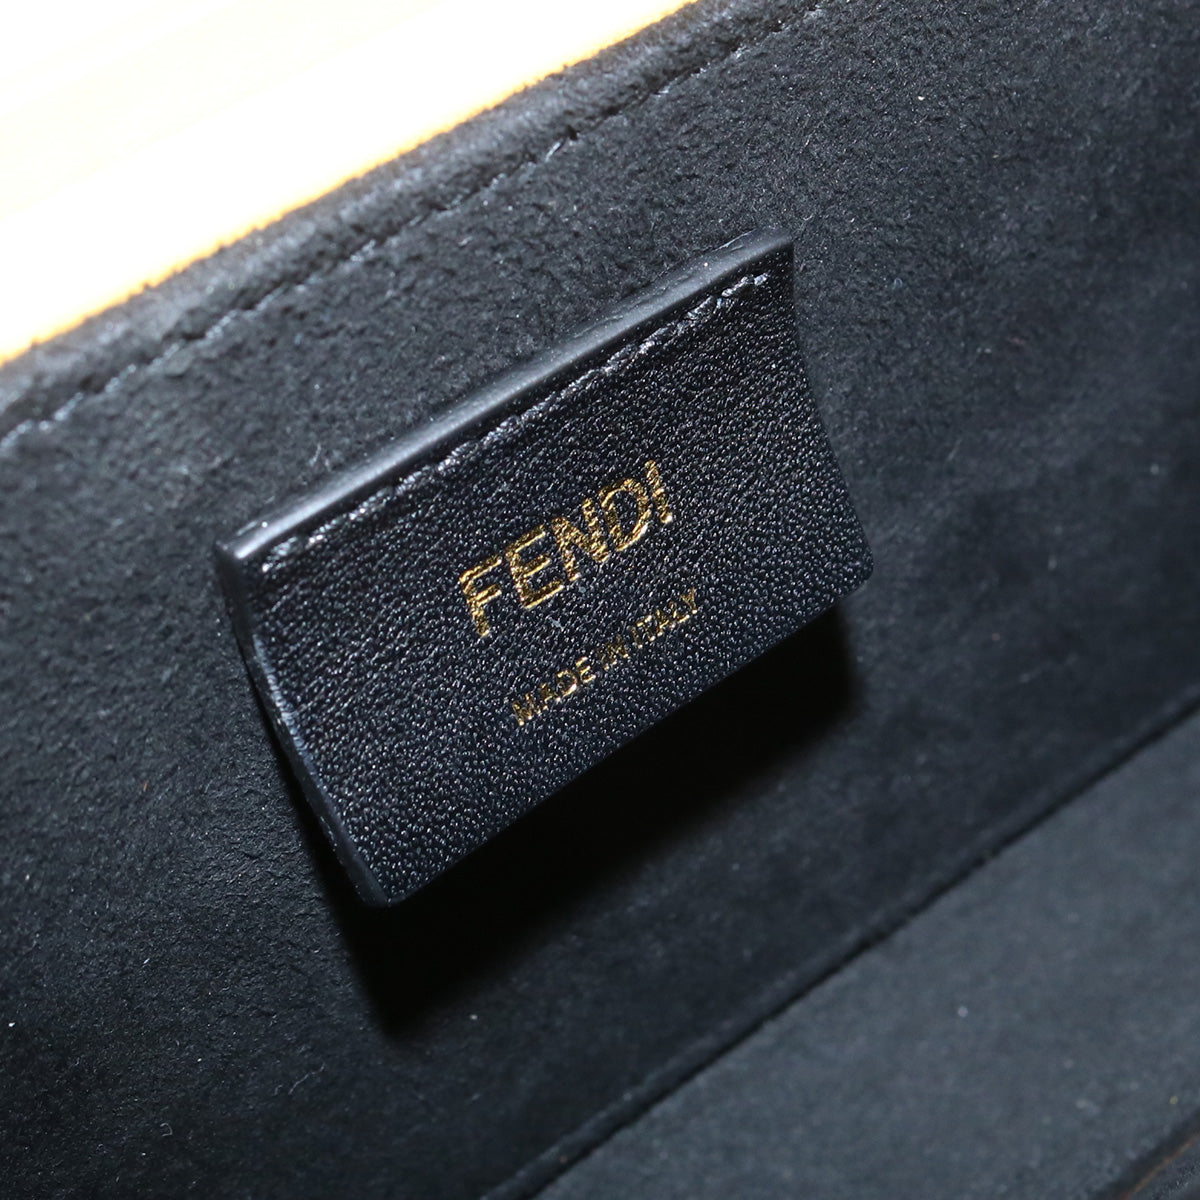 FENDI フェンディ ボックス型ショルダーバッグ 7VA520 ADP6 斜め掛け ショルダーバッグ レザー【中古】 ユニセックス